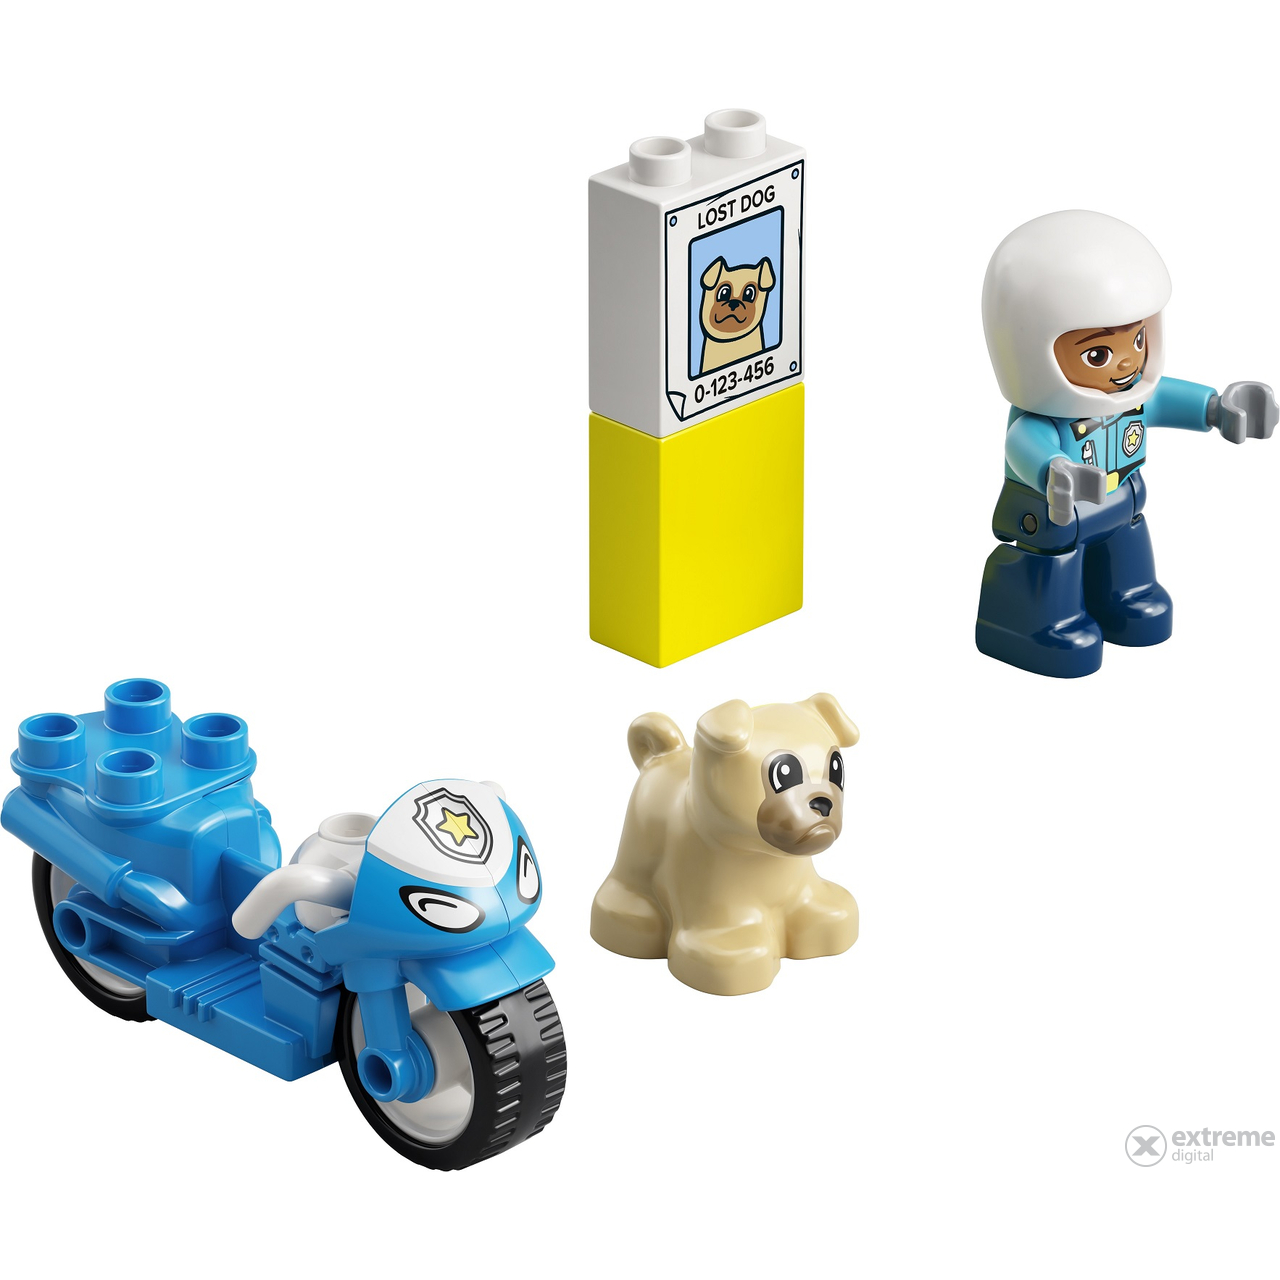 LEGO® Duplo® Town 10967  Policijski motocikl